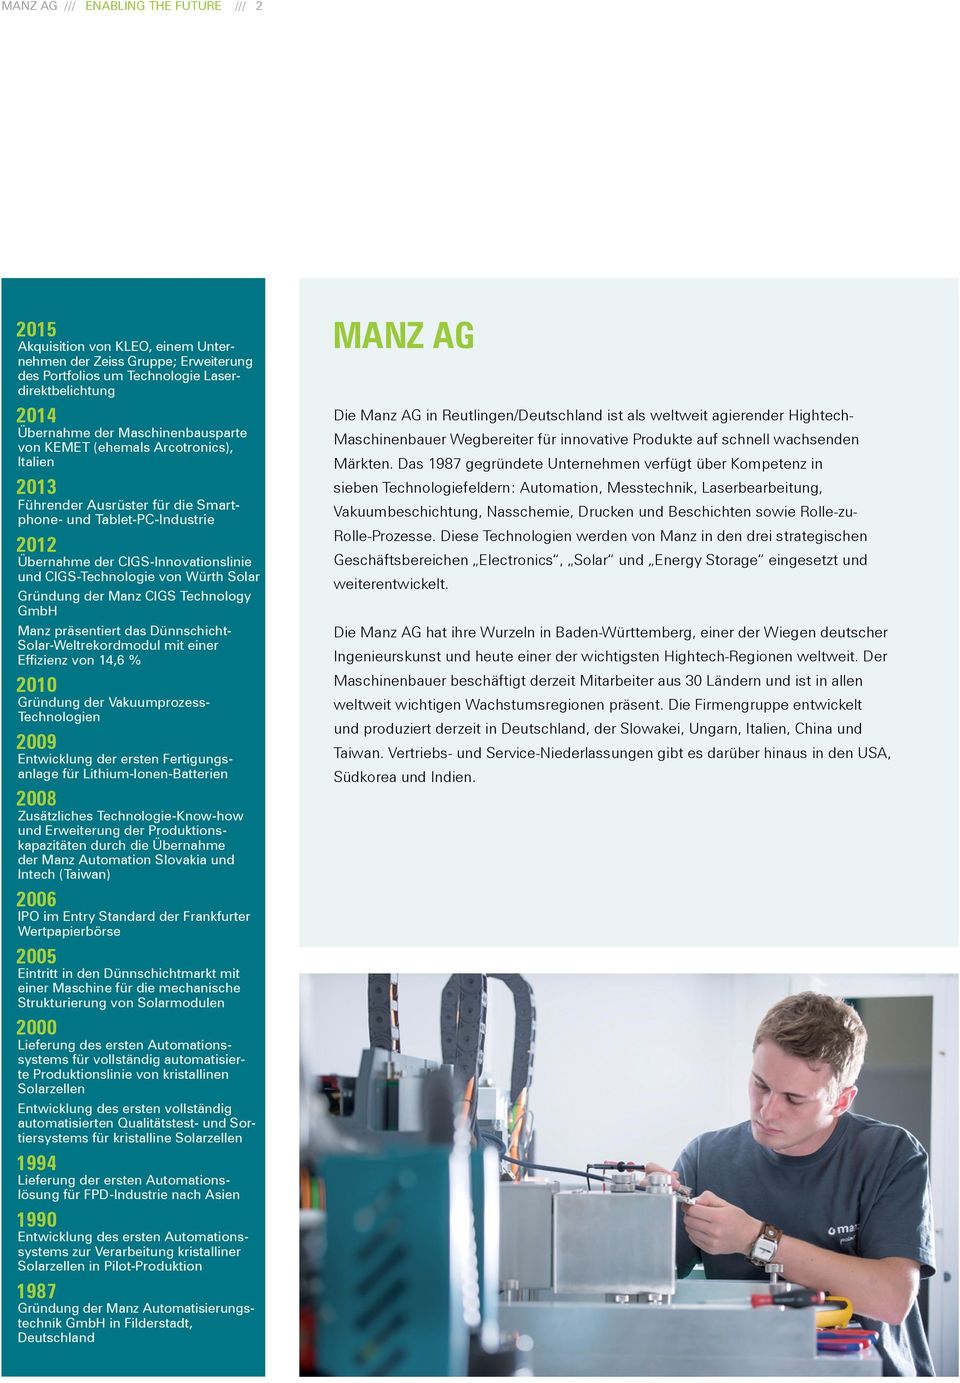 Würth Solar Gründung der Manz CIGS Technology GmbH Manz präsentiert das Dünnschicht- Solar-Weltrekordmodul mit einer Effizienz von 14,6 % 2010 Gründung der Vakuumprozess- Technologien 2009